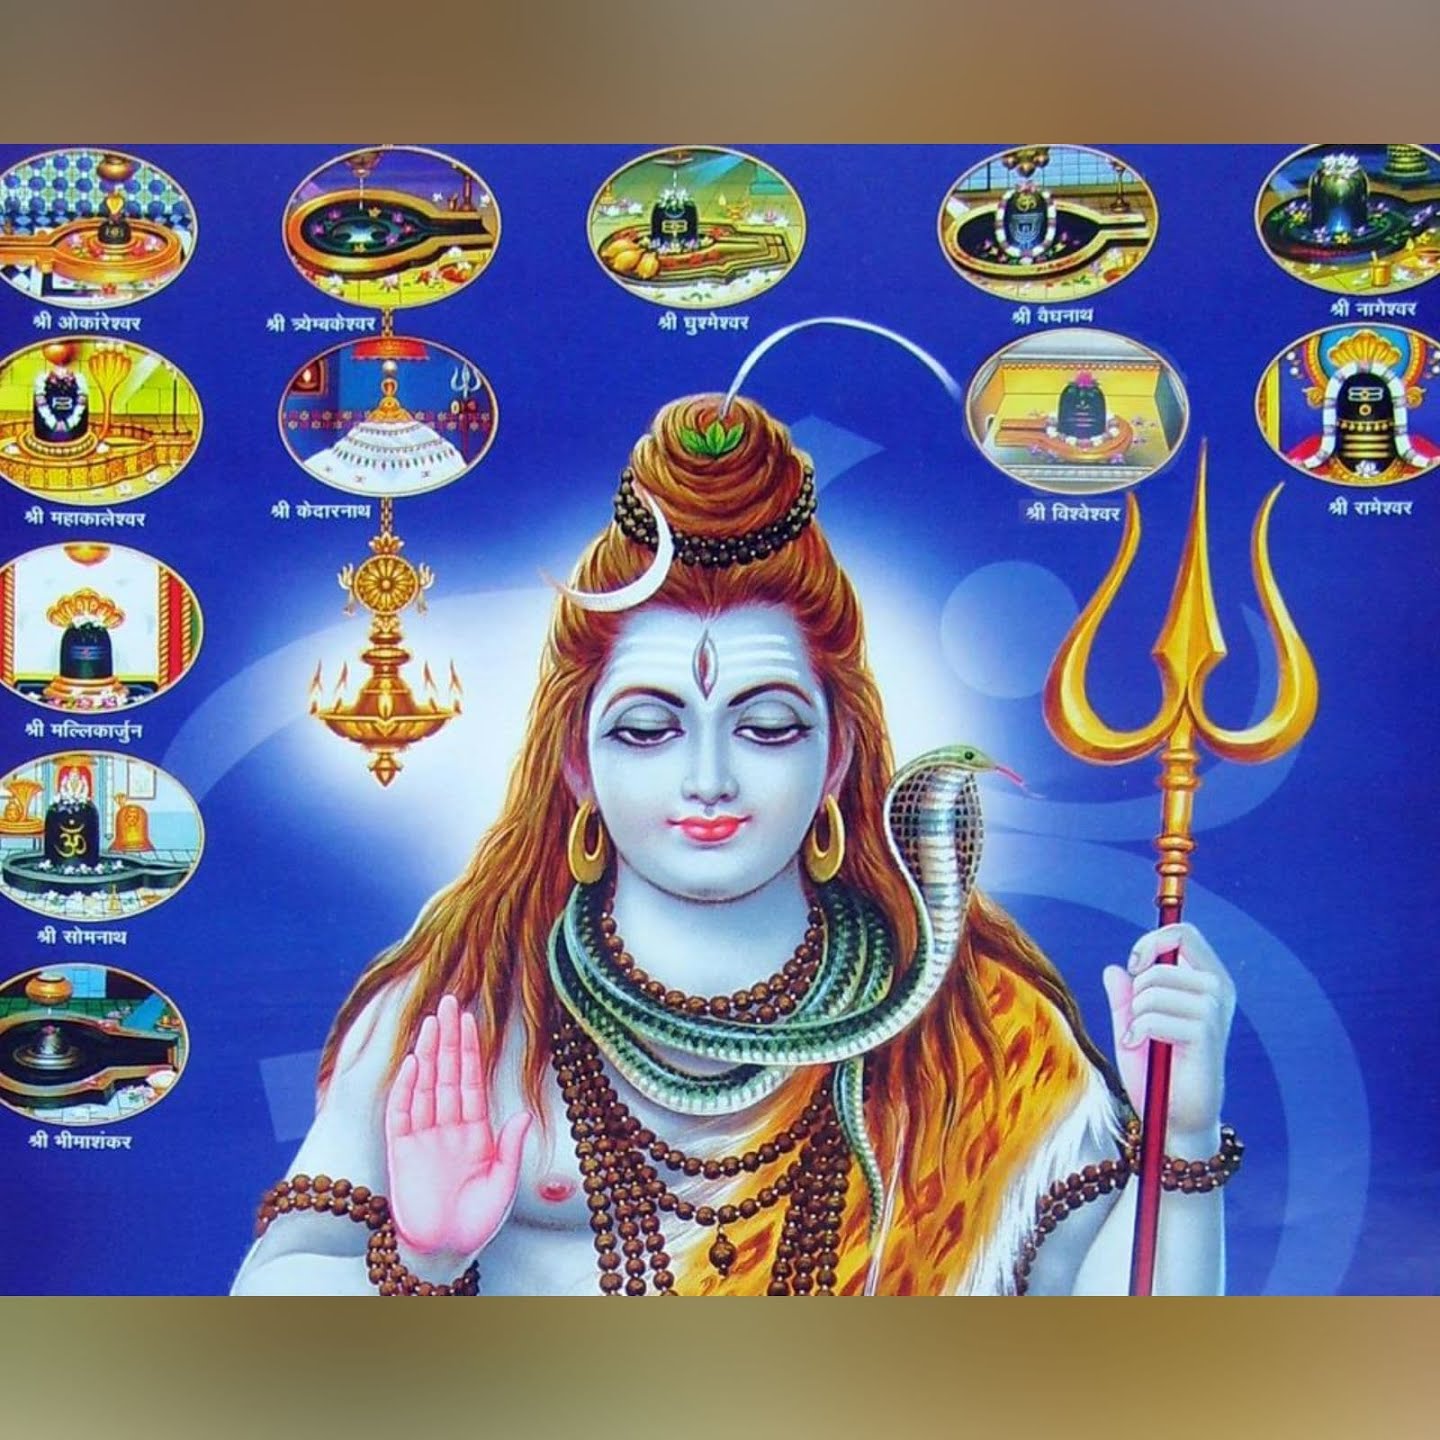 Maha Shiva Ratri Ela Cheyali Chaganti